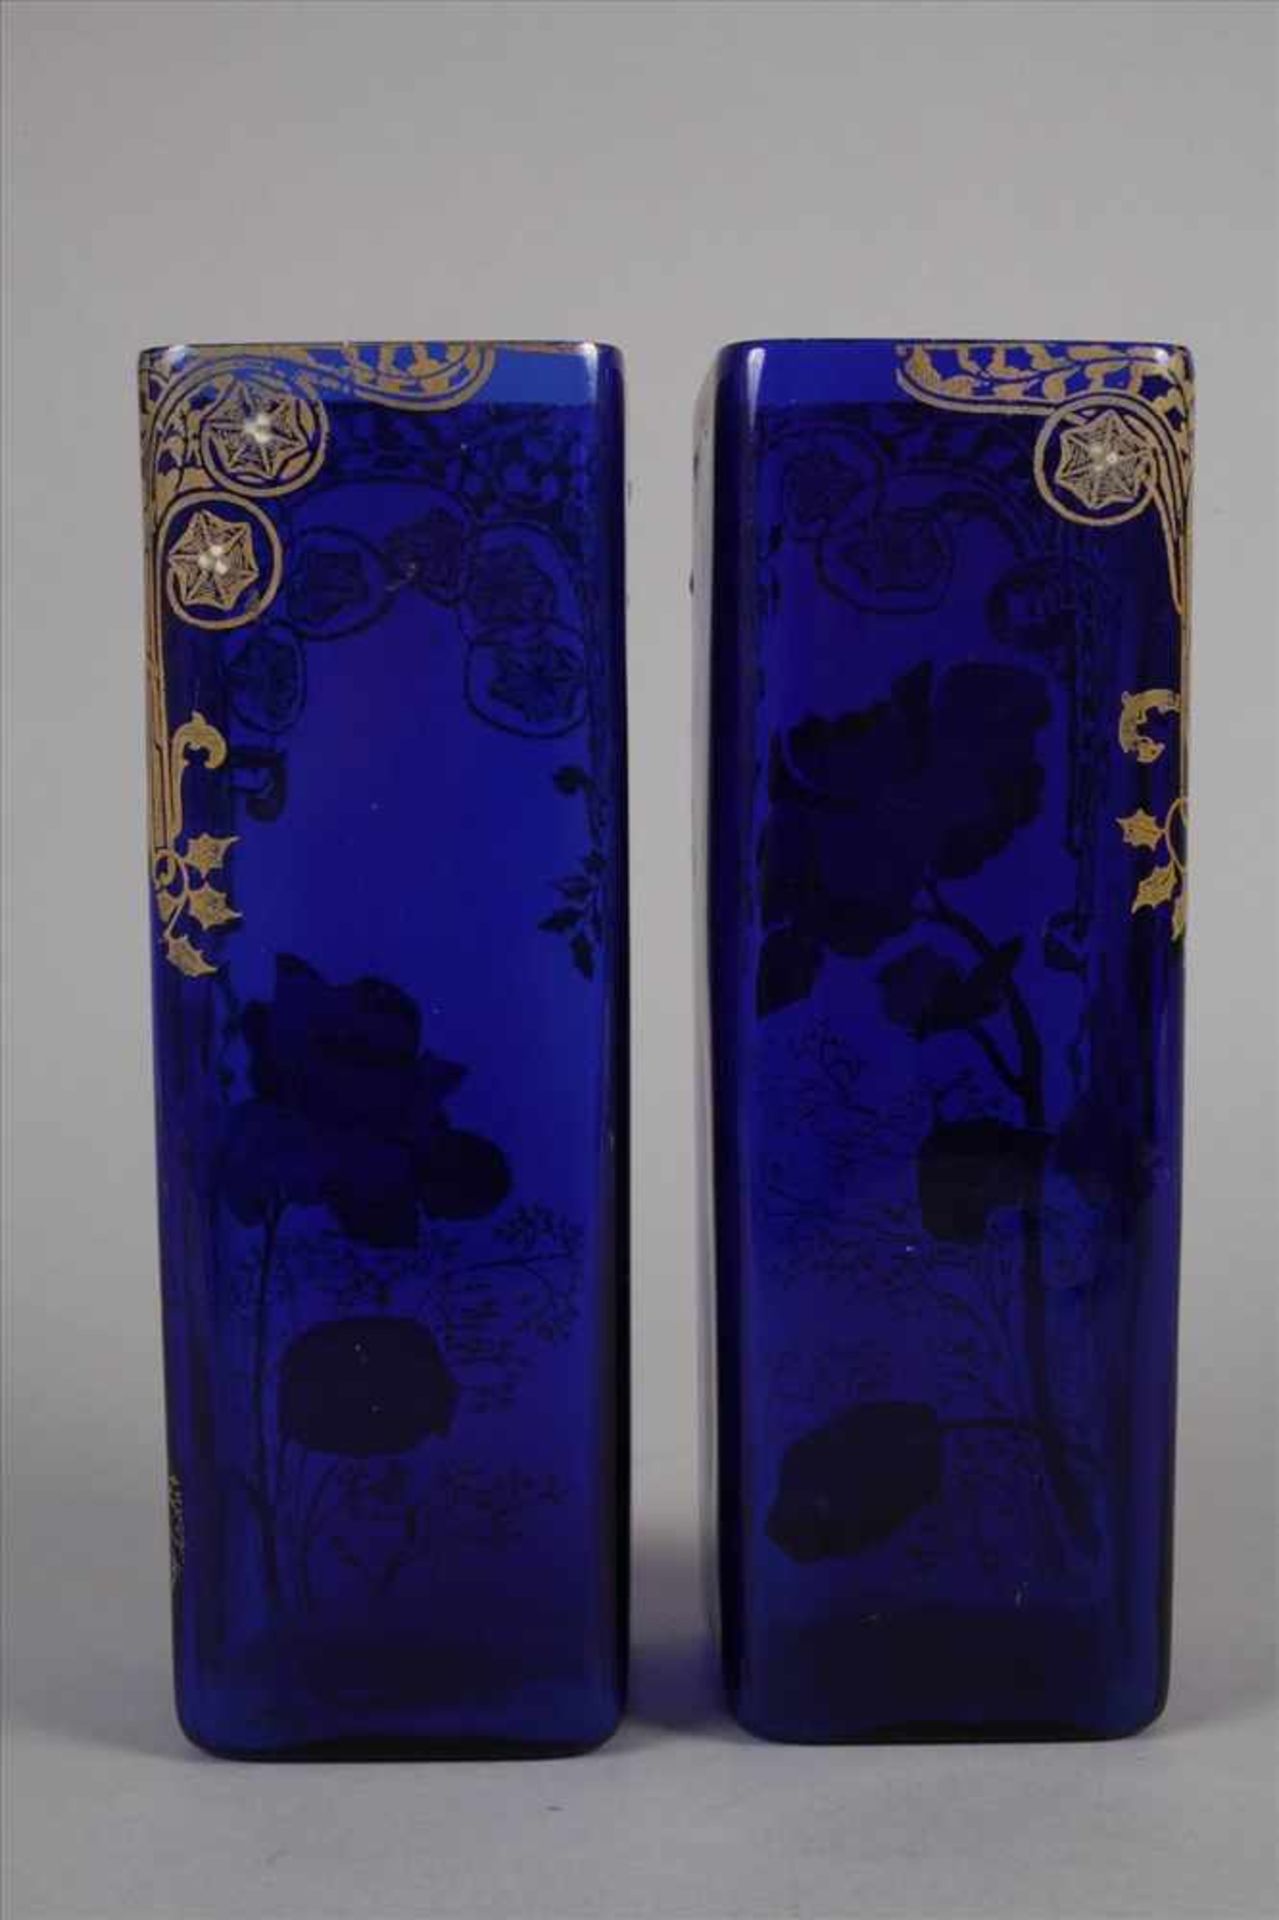 Paar Vasen Emaillemalereium 1900, kobaltblaues Glas formgeblasen, mit opaken Emaillefarben floral - Bild 2 aus 3